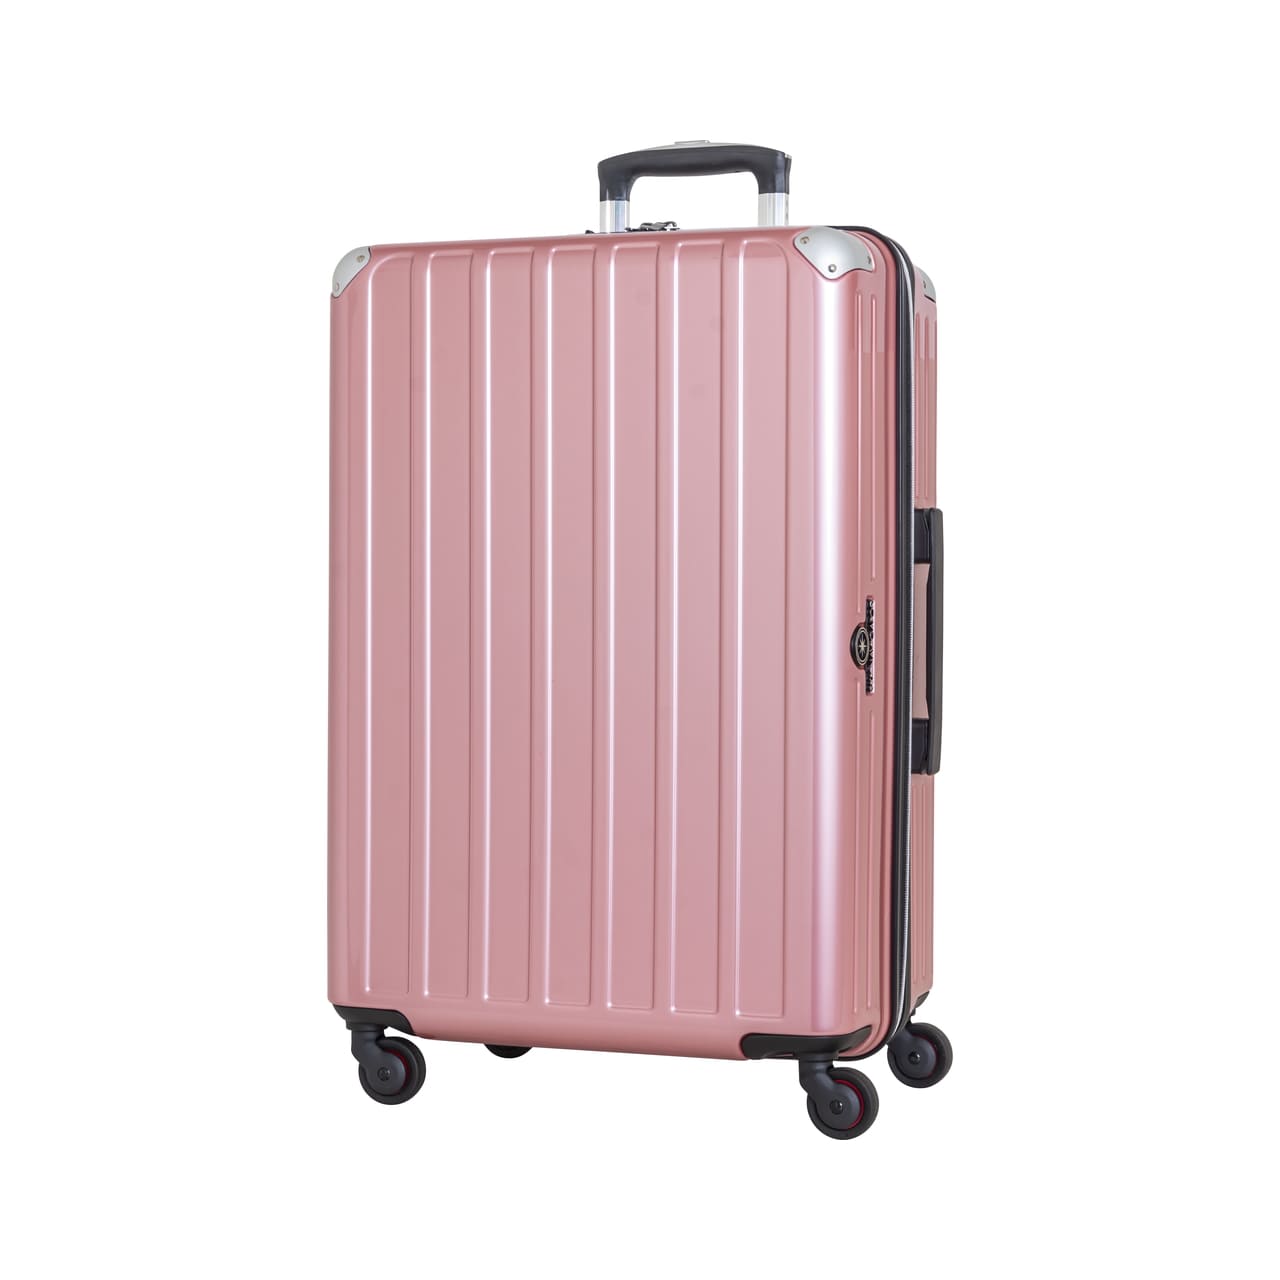 SKYNAVIGATORのスーツケースSK-0739-61のピンクの正面振り画像